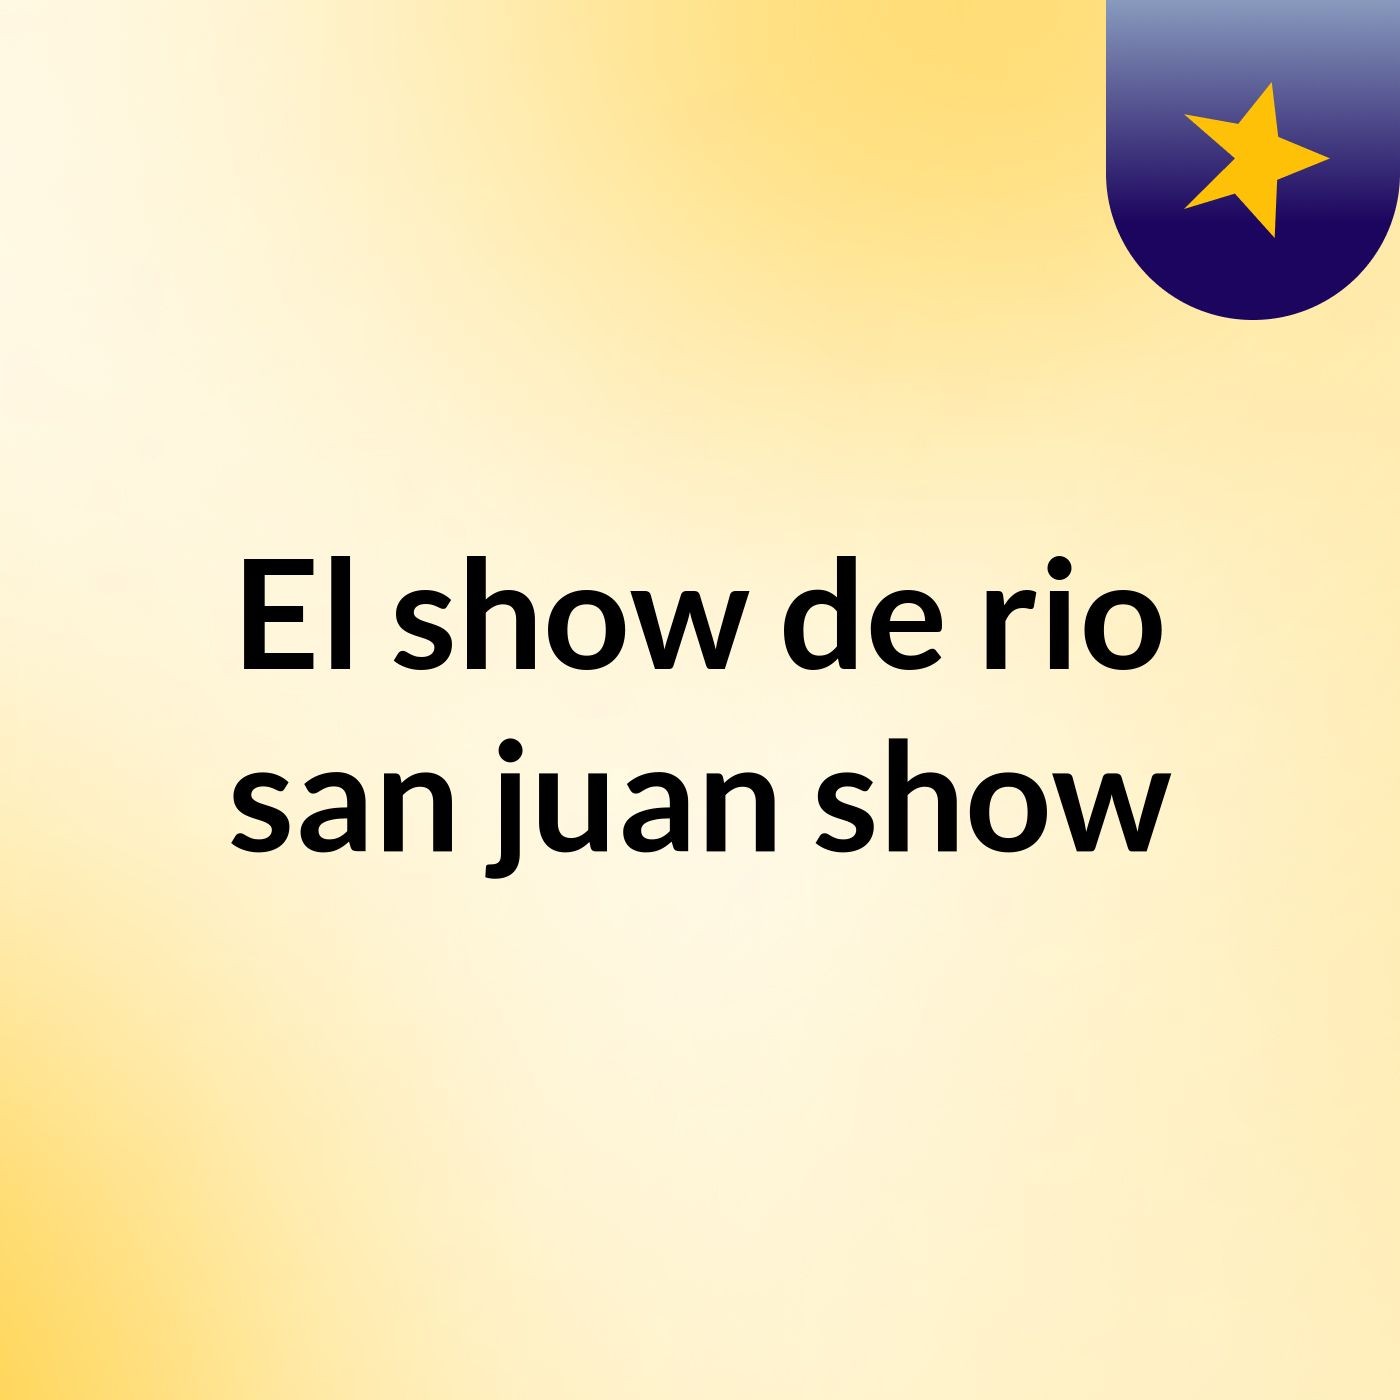 El show de rio san juan show